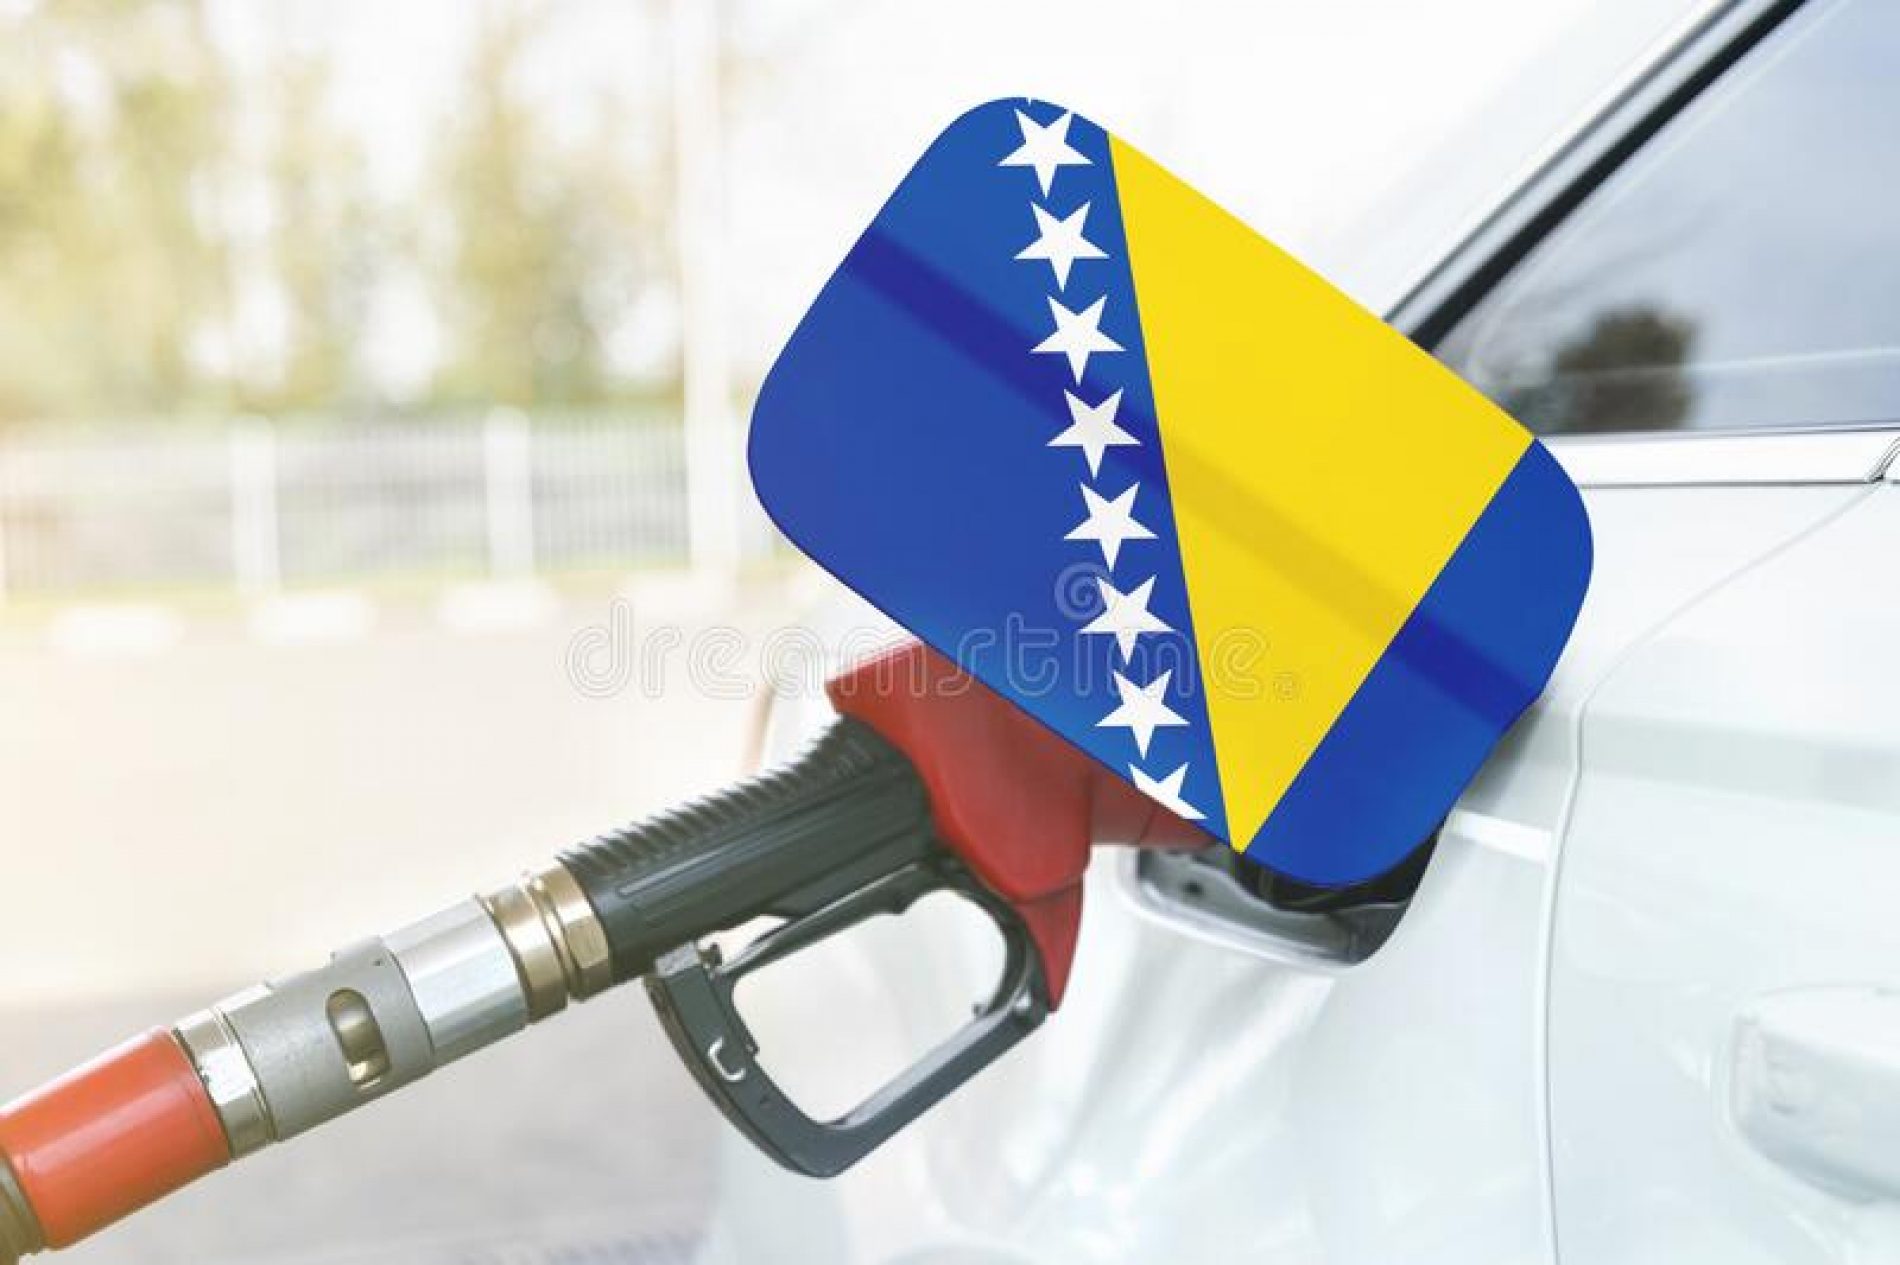 Najpovoljnije cijene u regiji: Komšije hrle u Bosnu da toče gorivo